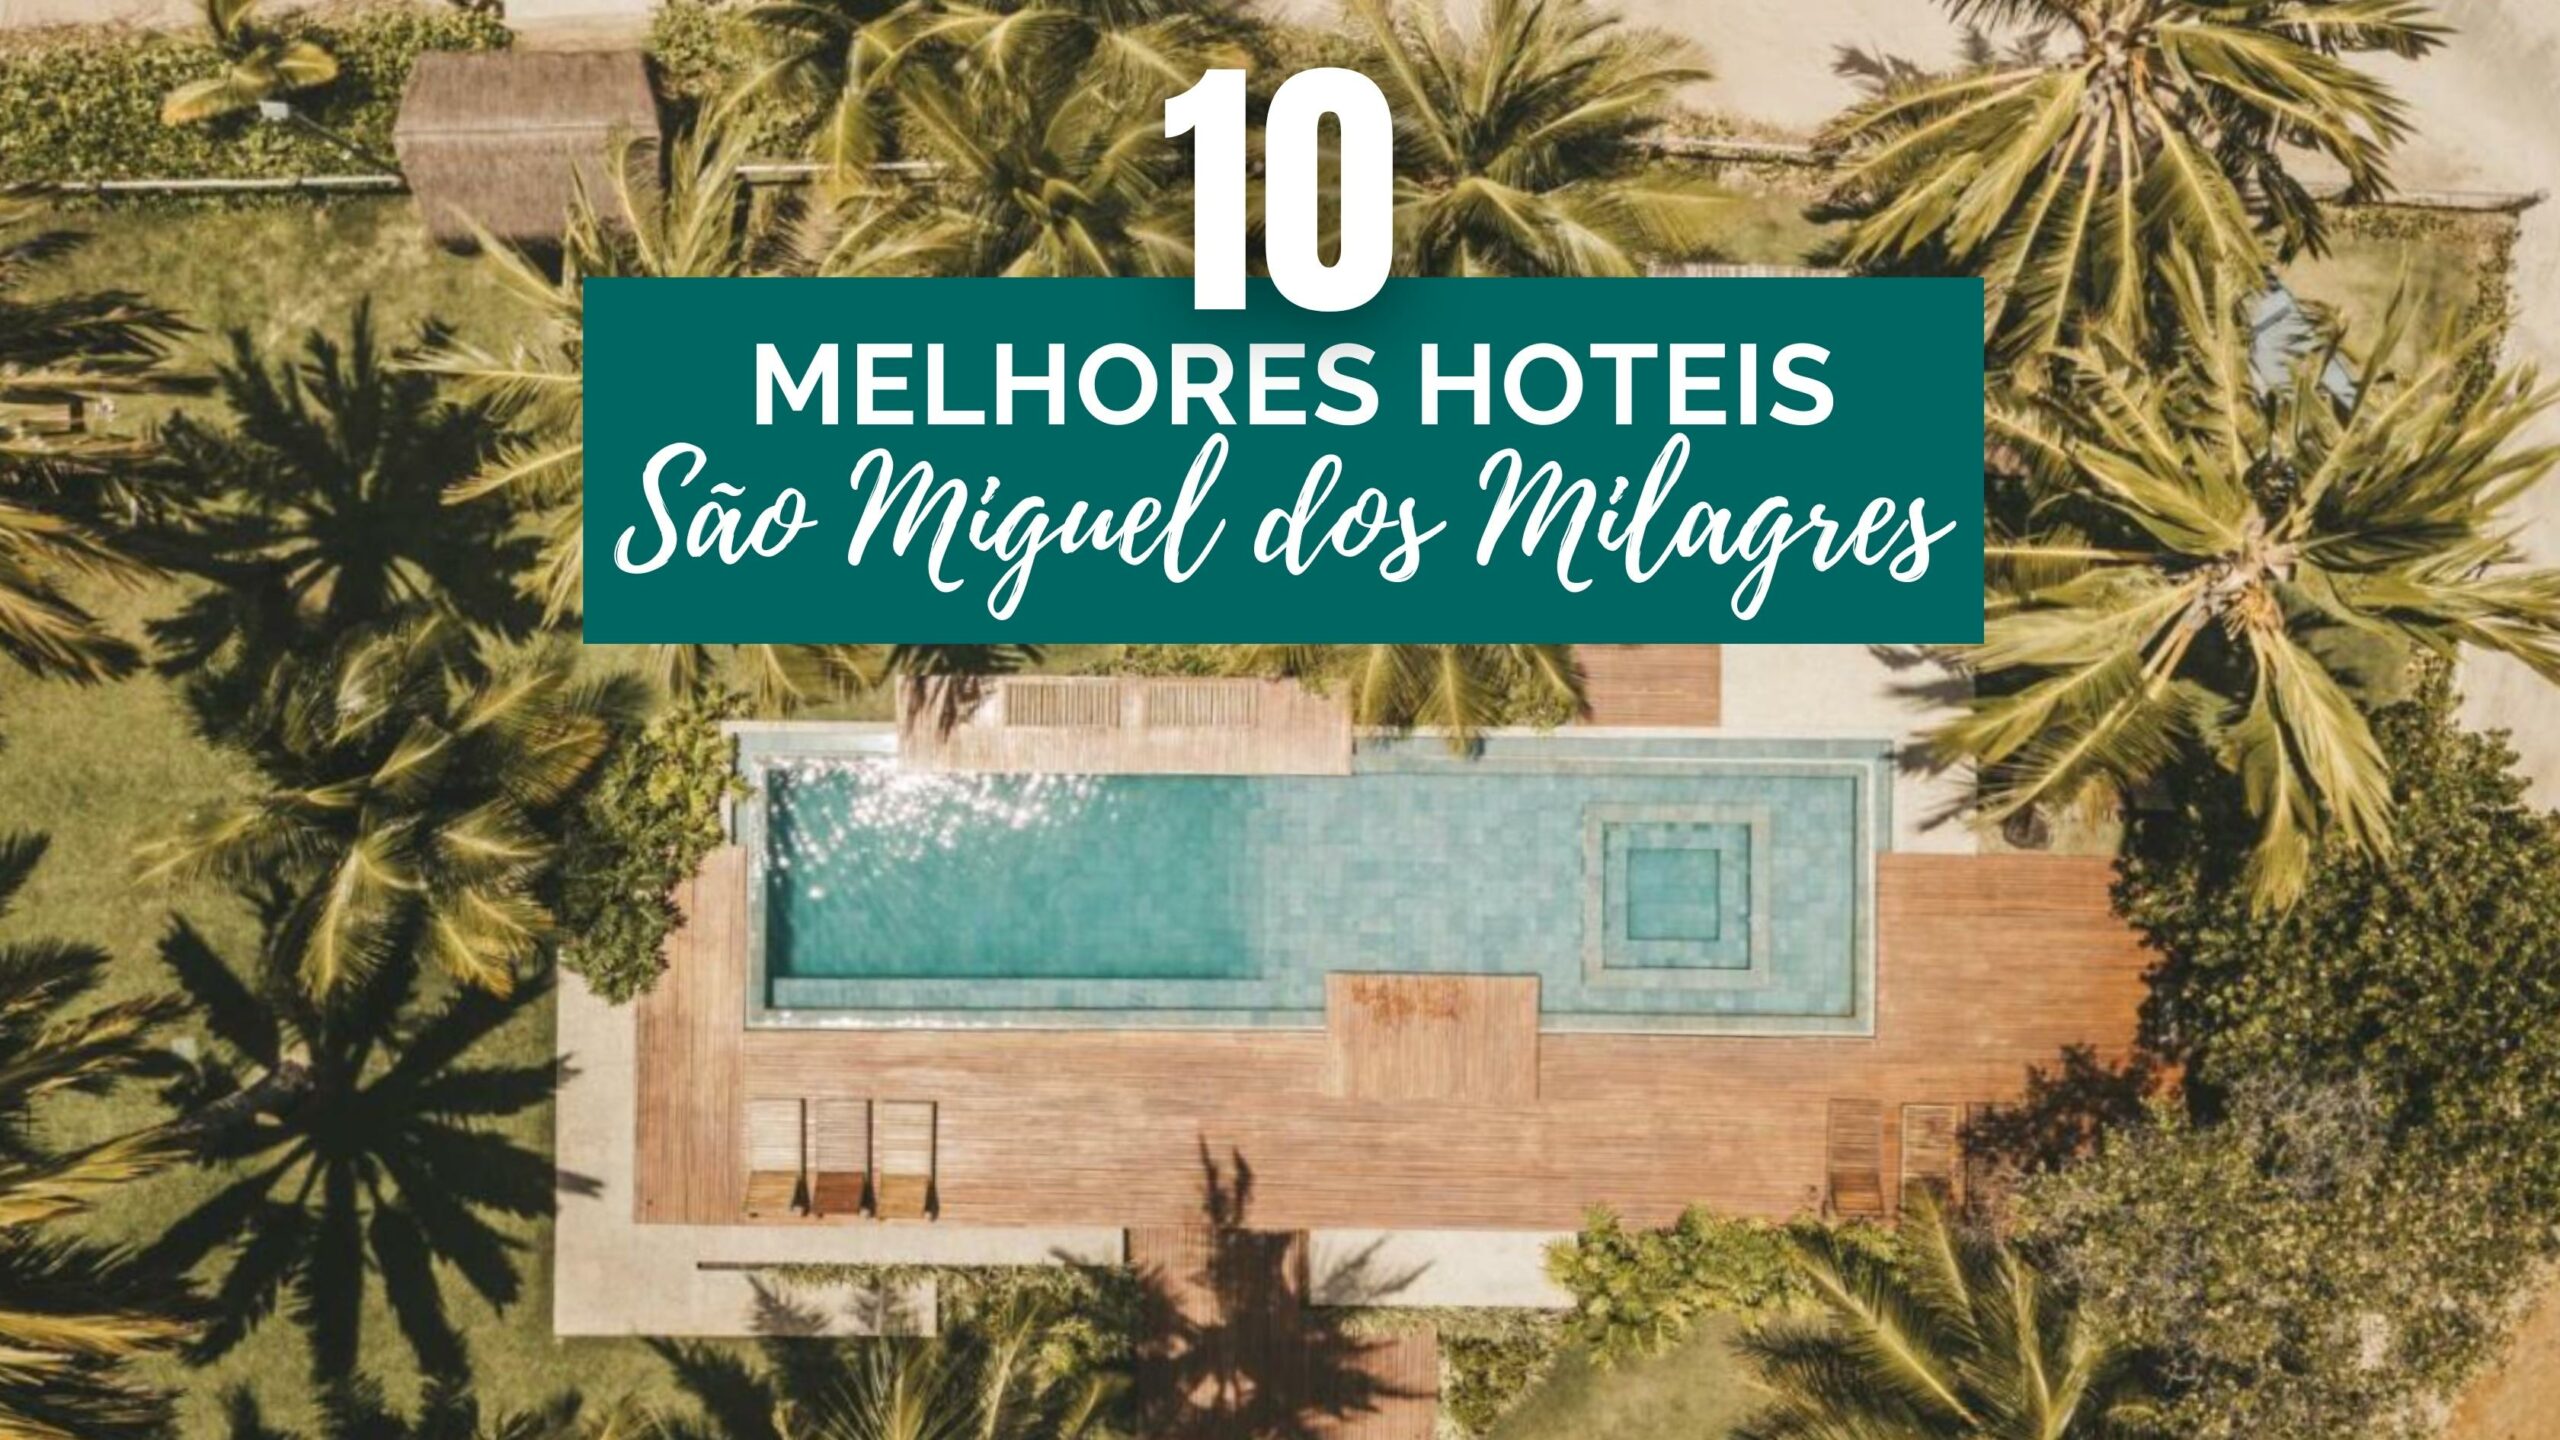 Melhores Hotéis em São Miguel dos Milagres